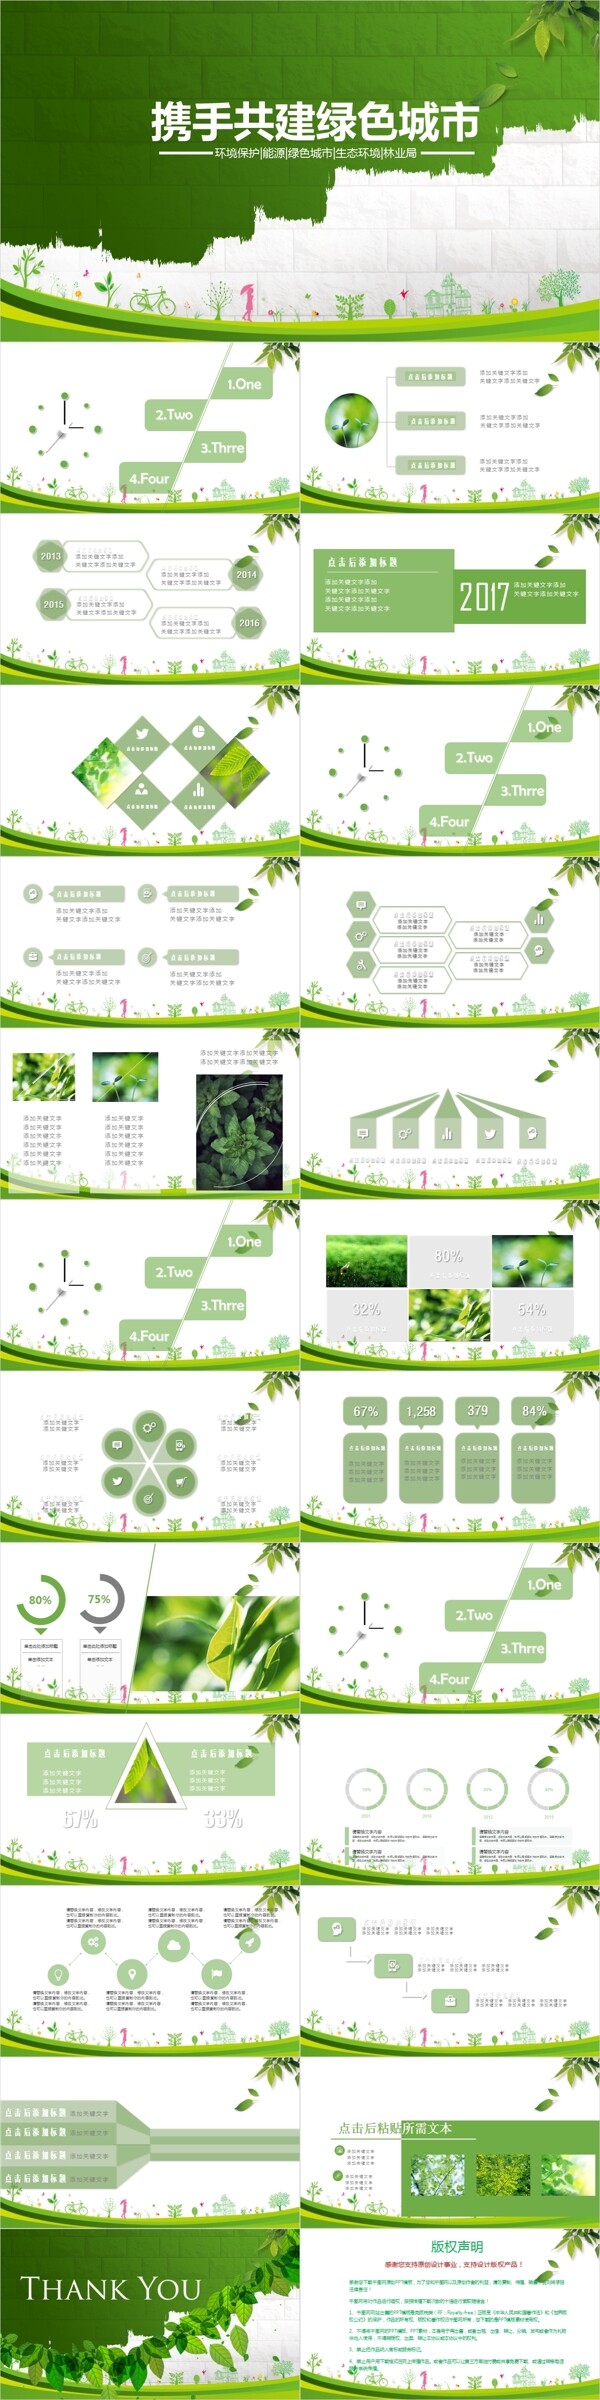 携手共创绿色地球公益PPT模板